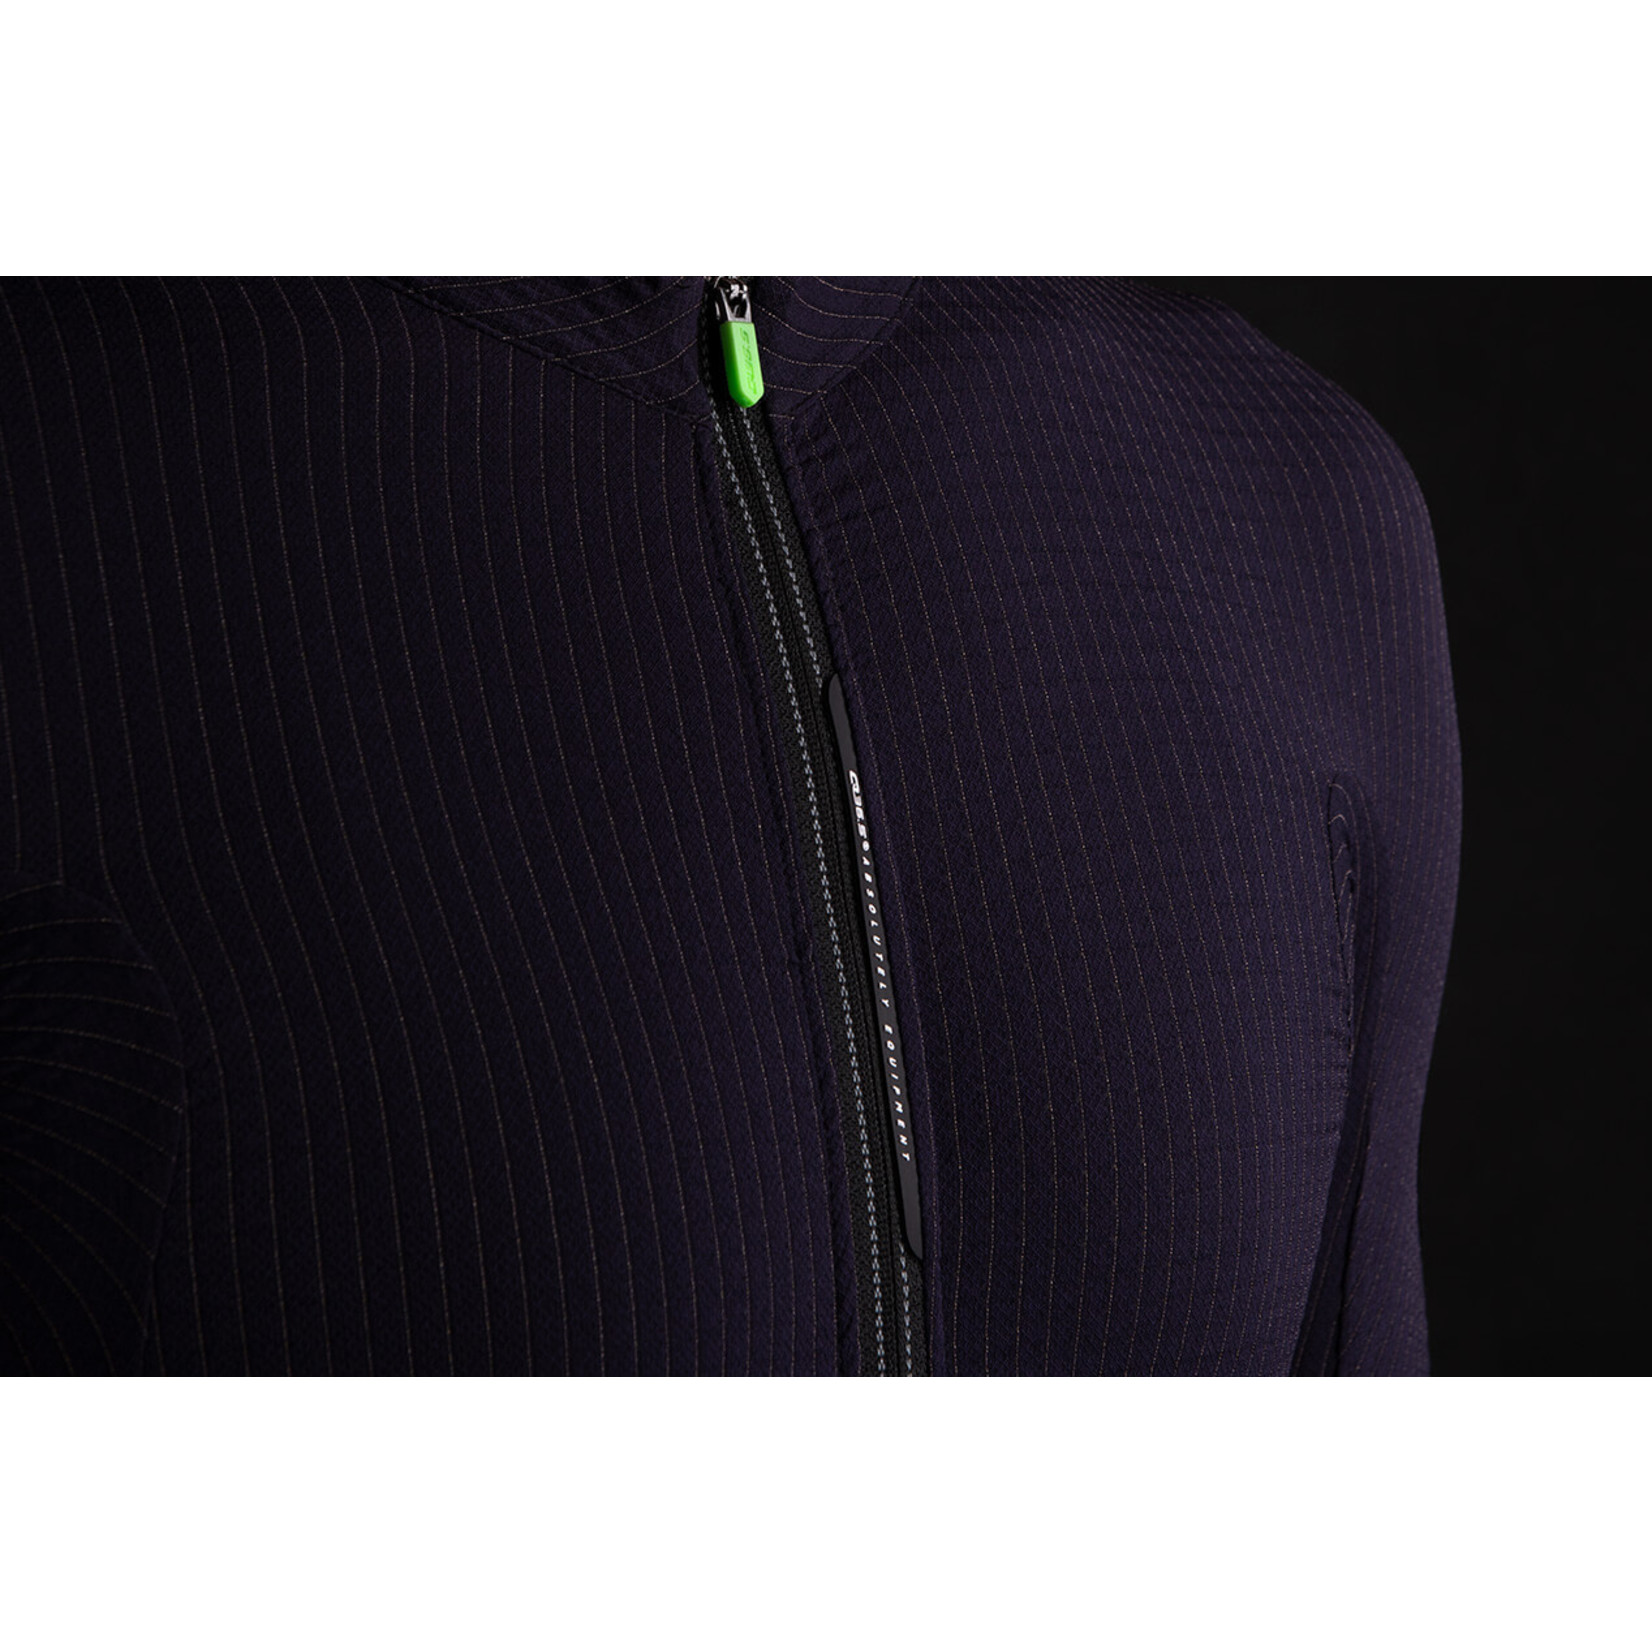 Q36.5 Q36.5 Jersey Long Sleeve L1 pinstripe X - Olive Green